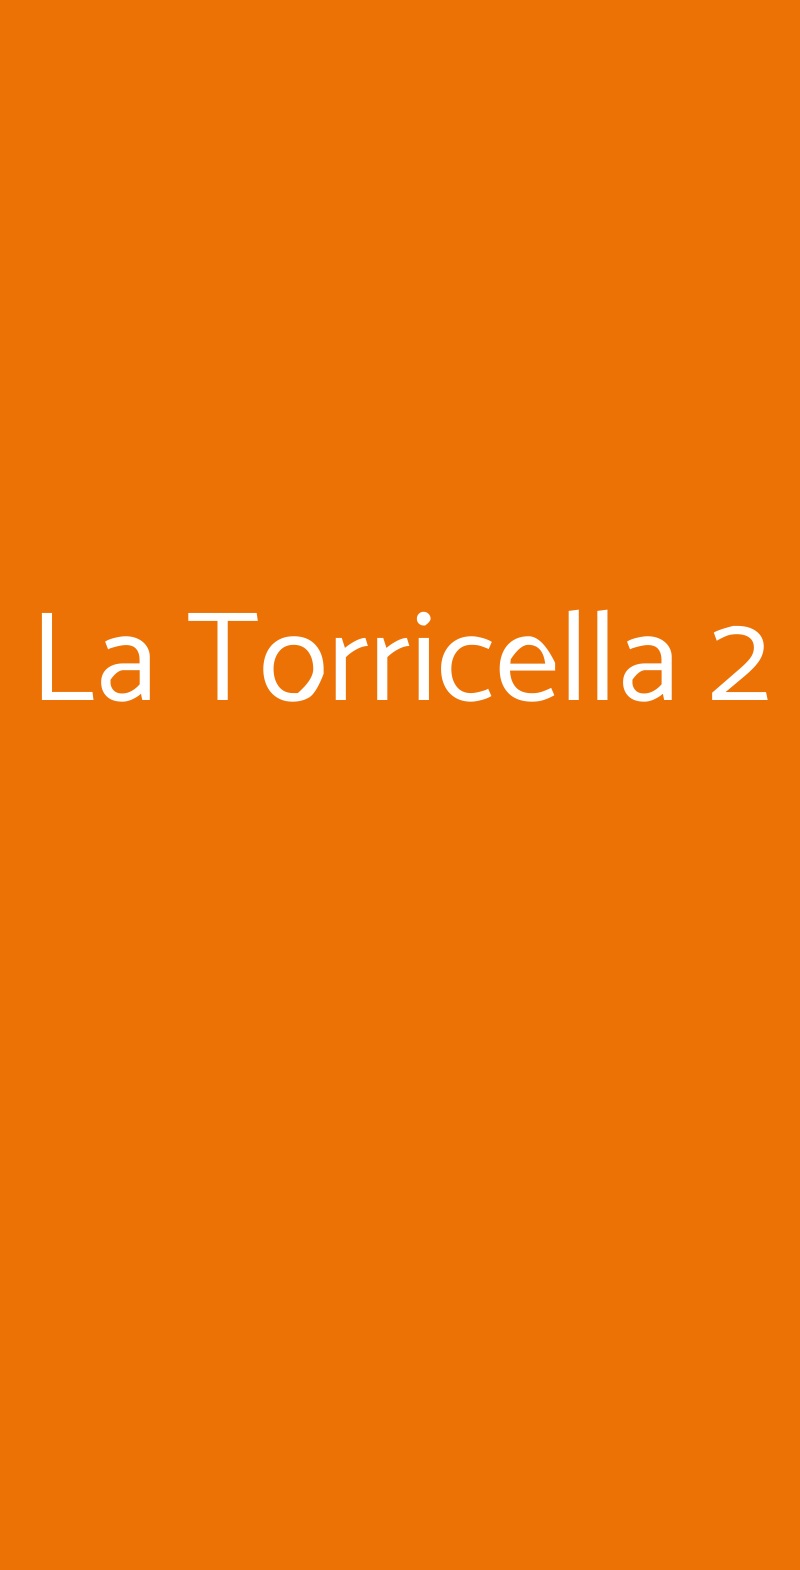 La Torricella 2 Roma menù 1 pagina